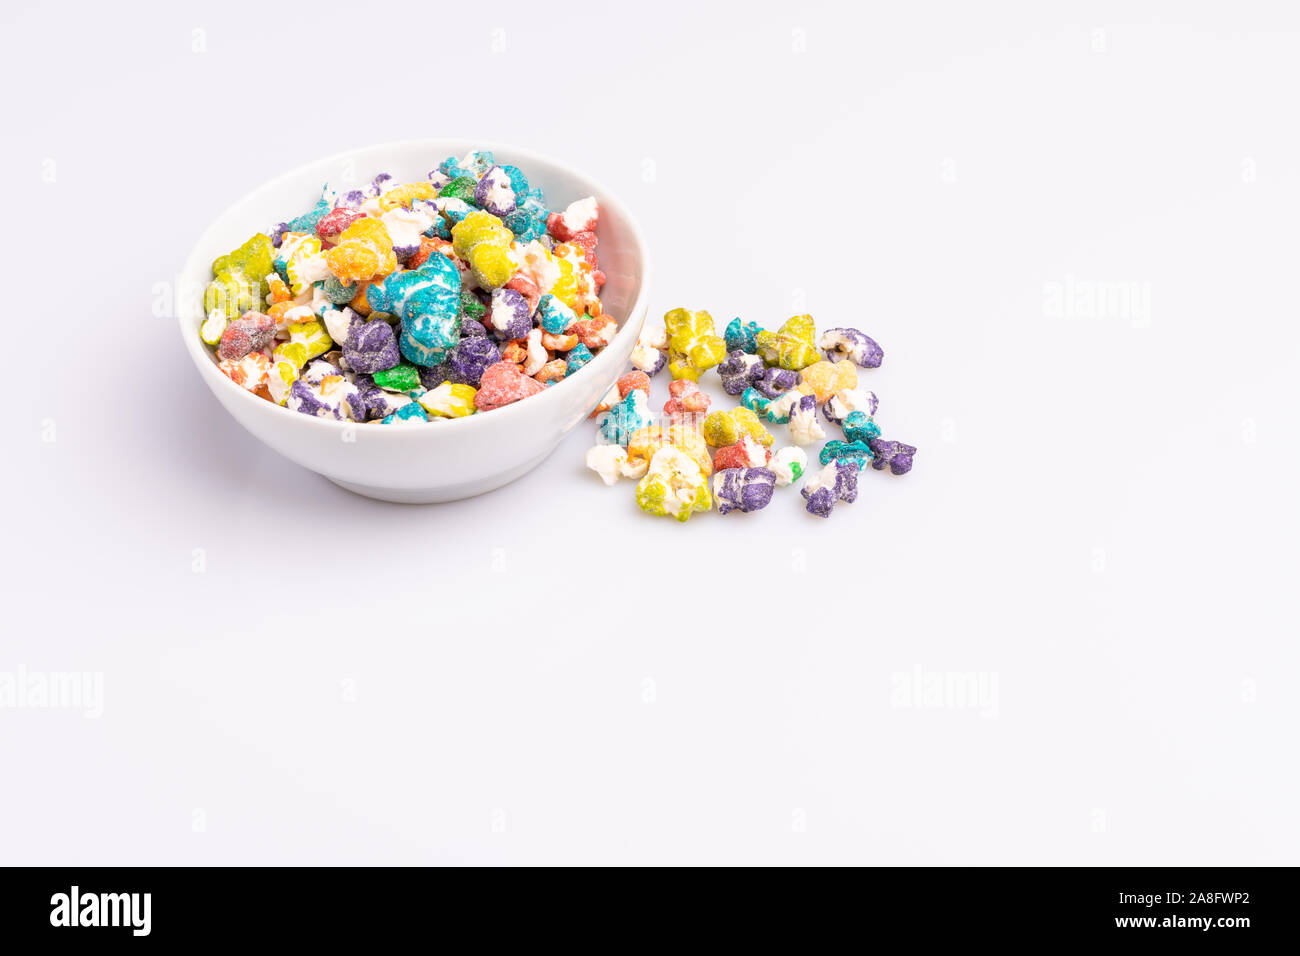 Farbige Popcorn Süßigkeiten auf weißem Hintergrund, weiches Licht, studio Shot, kopieren. Junk Food, Fruit flavored Popcorn. Bunte, Cognac, Cand. Stockfoto